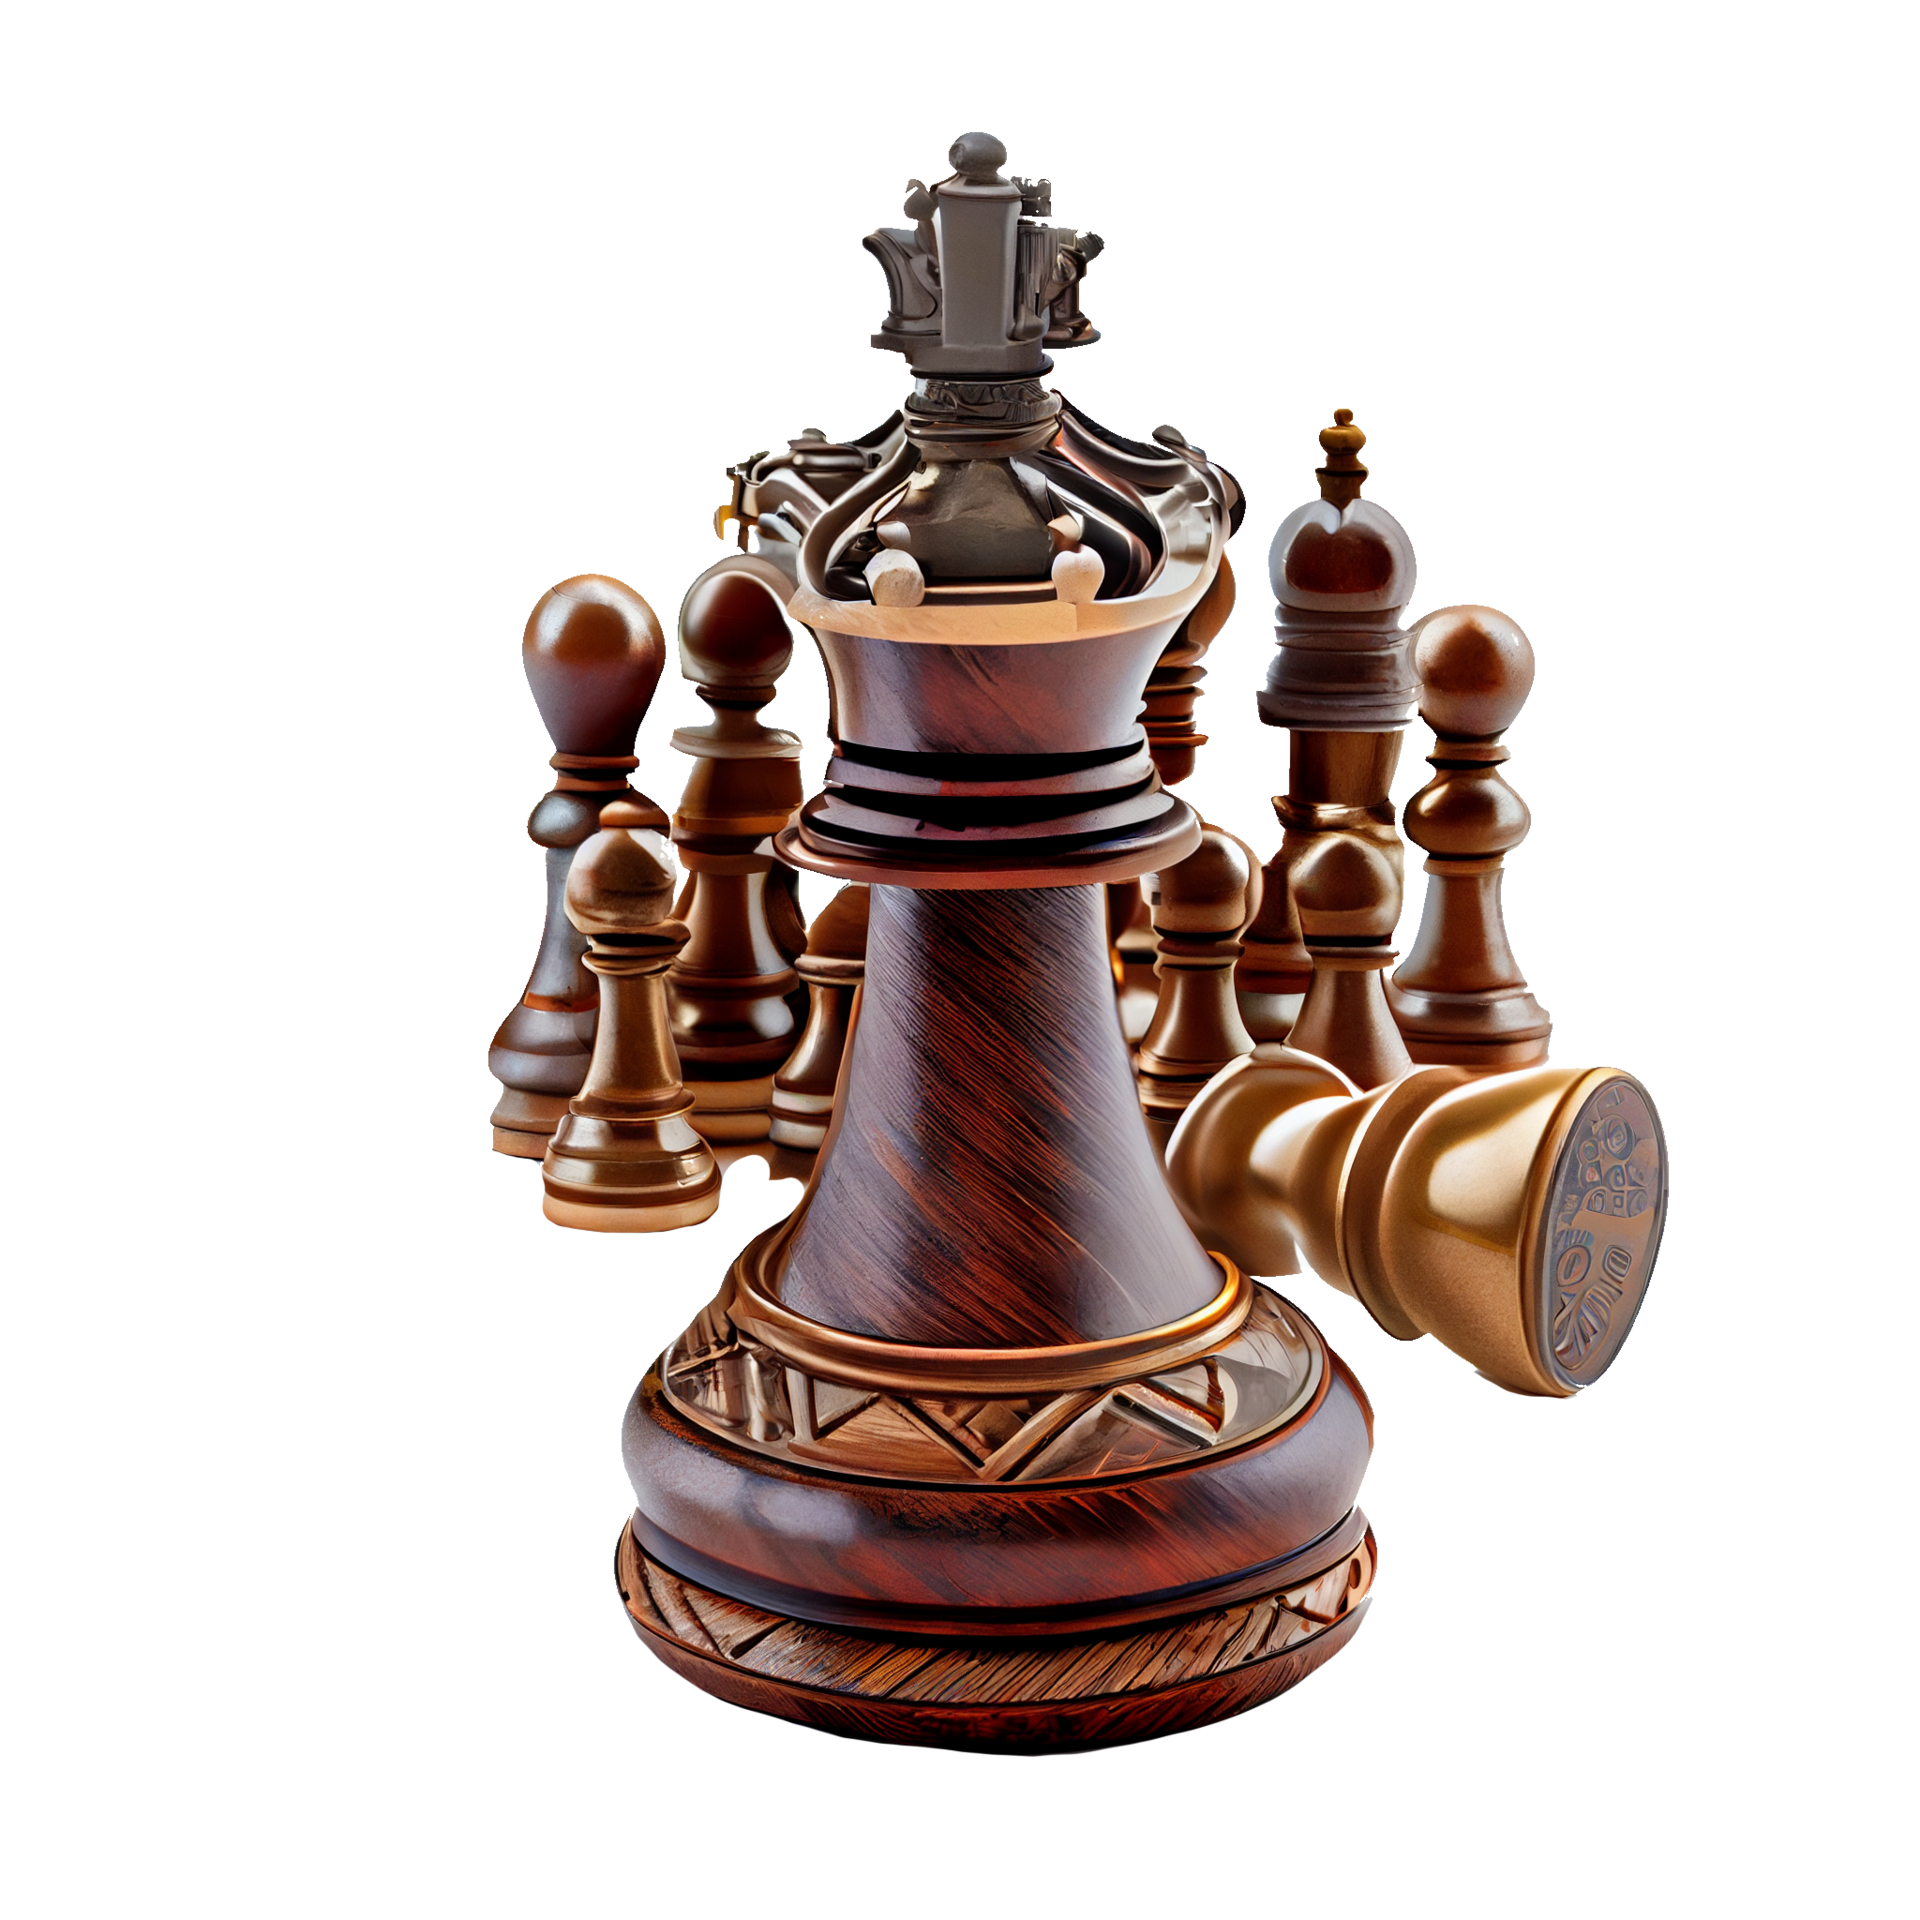 peças de xadrez rei e soldado em fundo transparente. conceito de